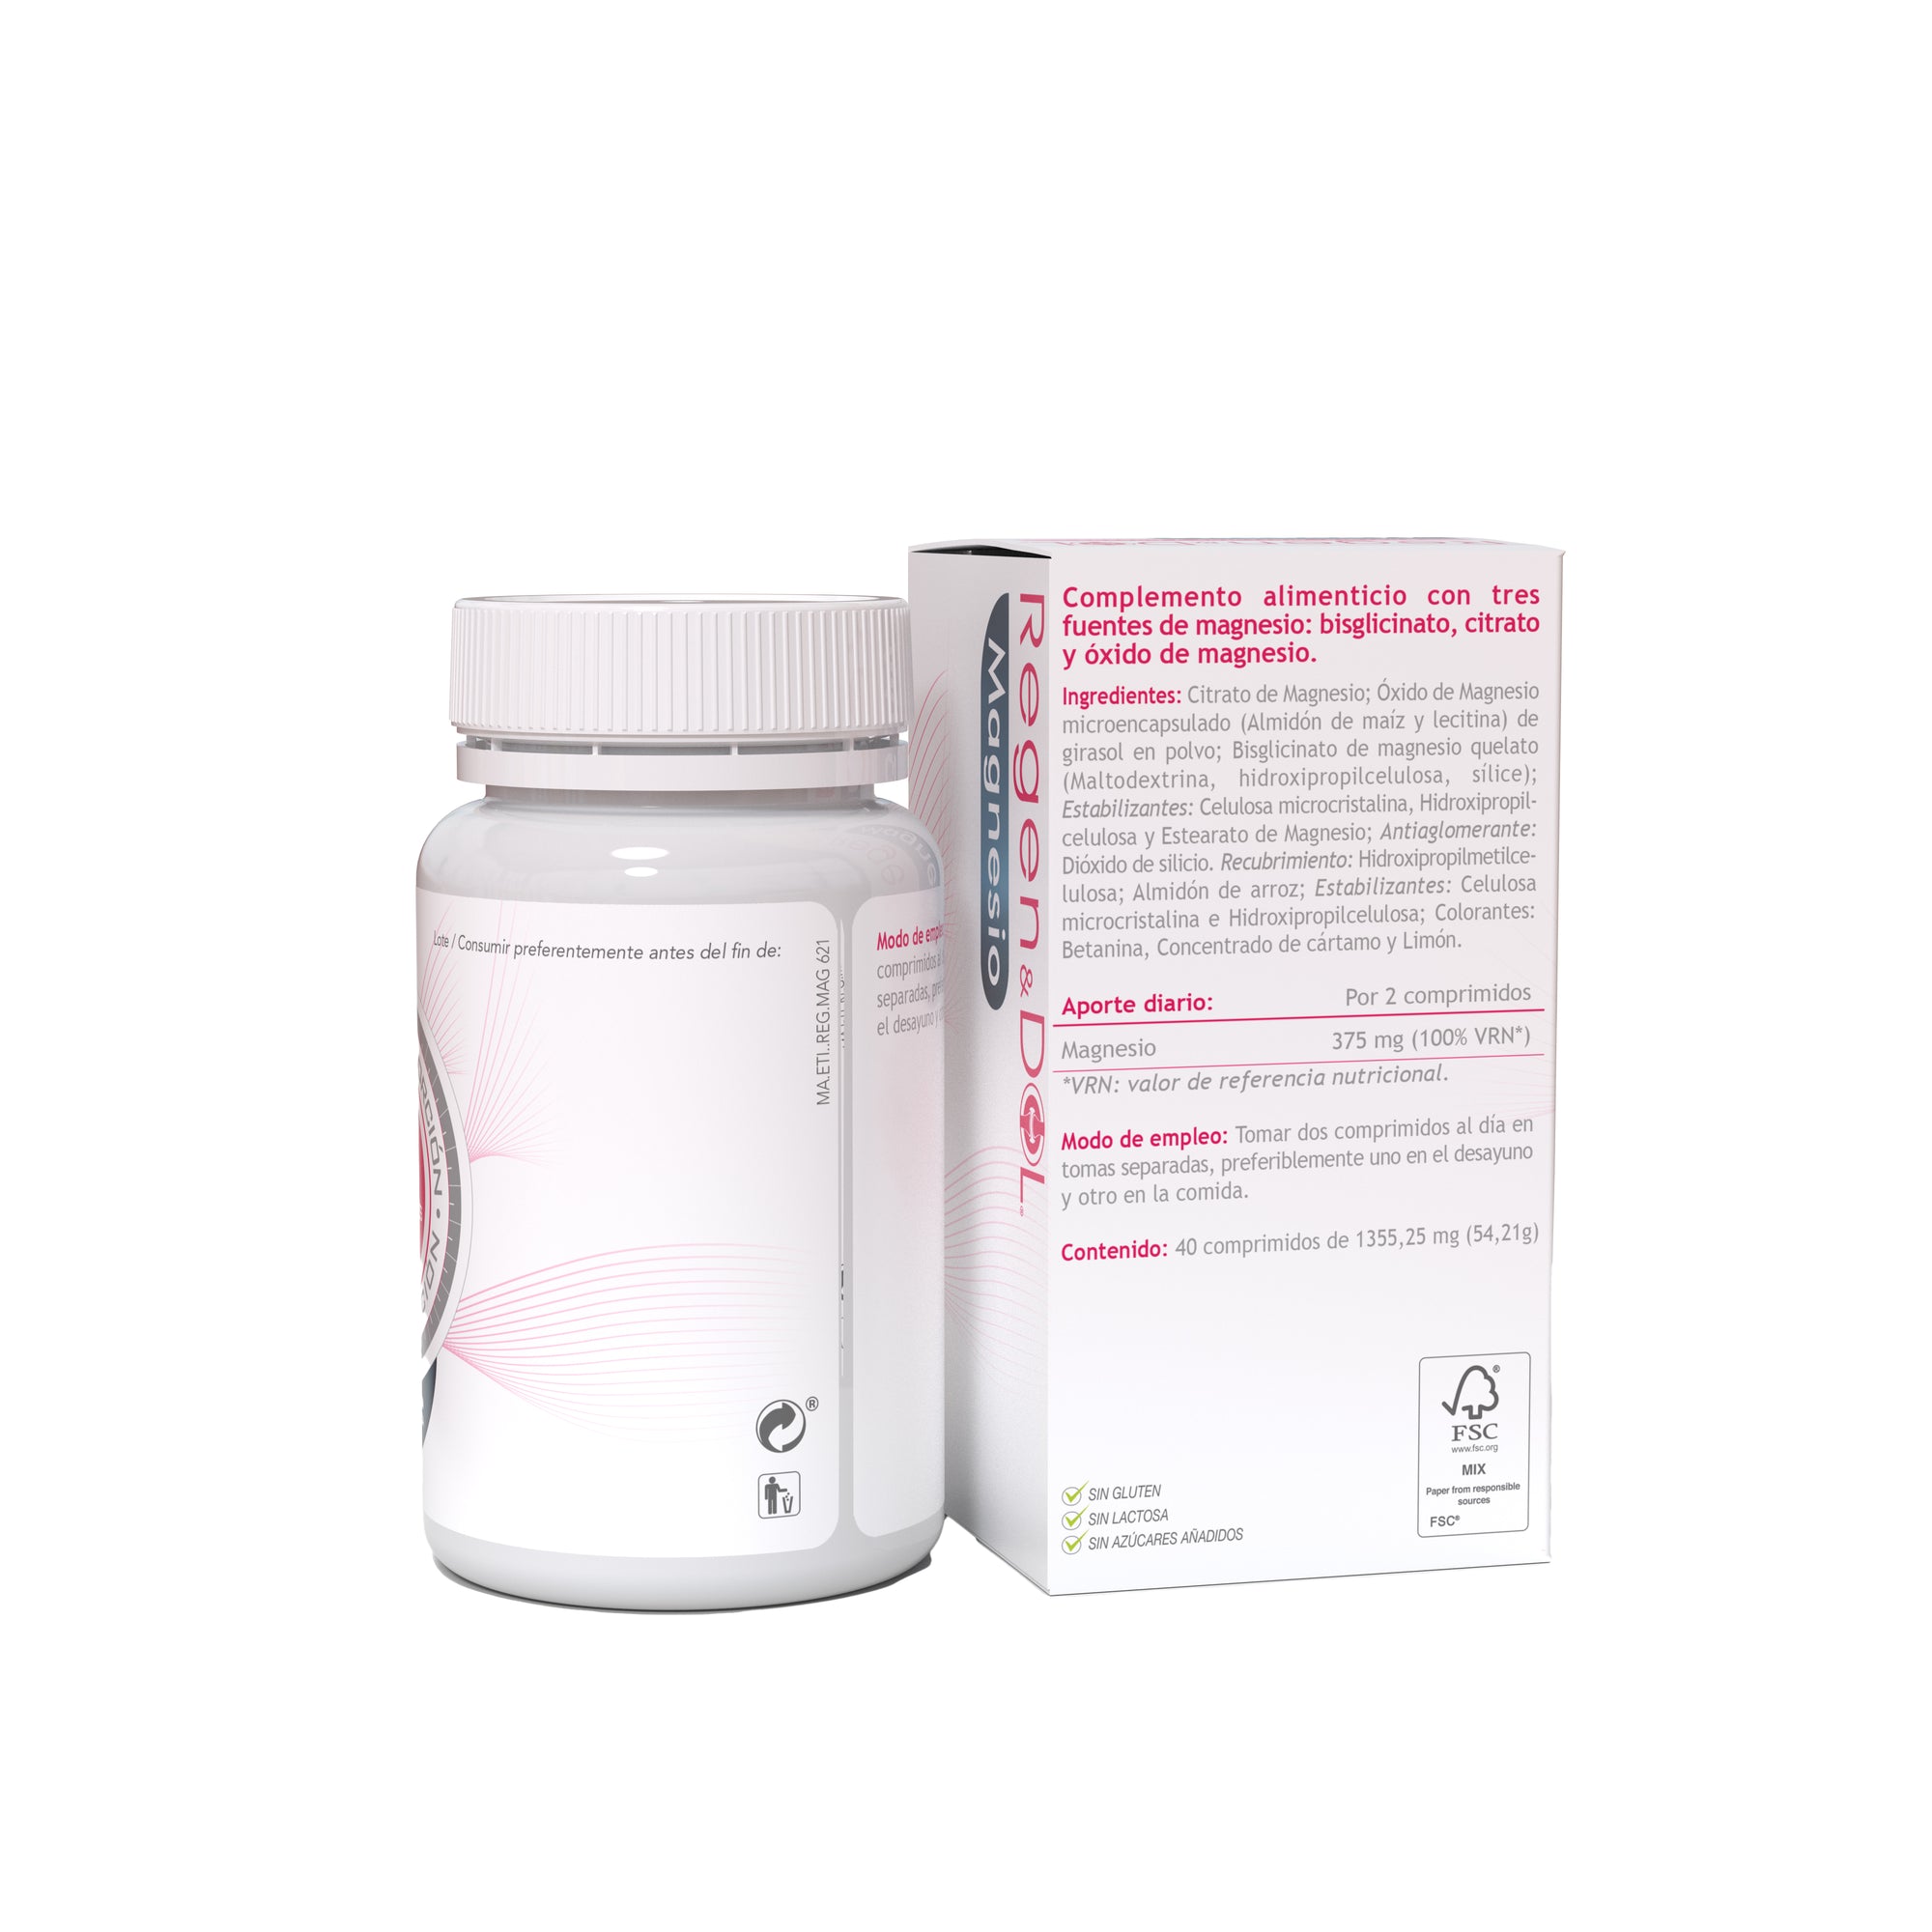 Eladiet-Regendol-Magnesio-40-Comprimidos-en-biopharmacia.shop